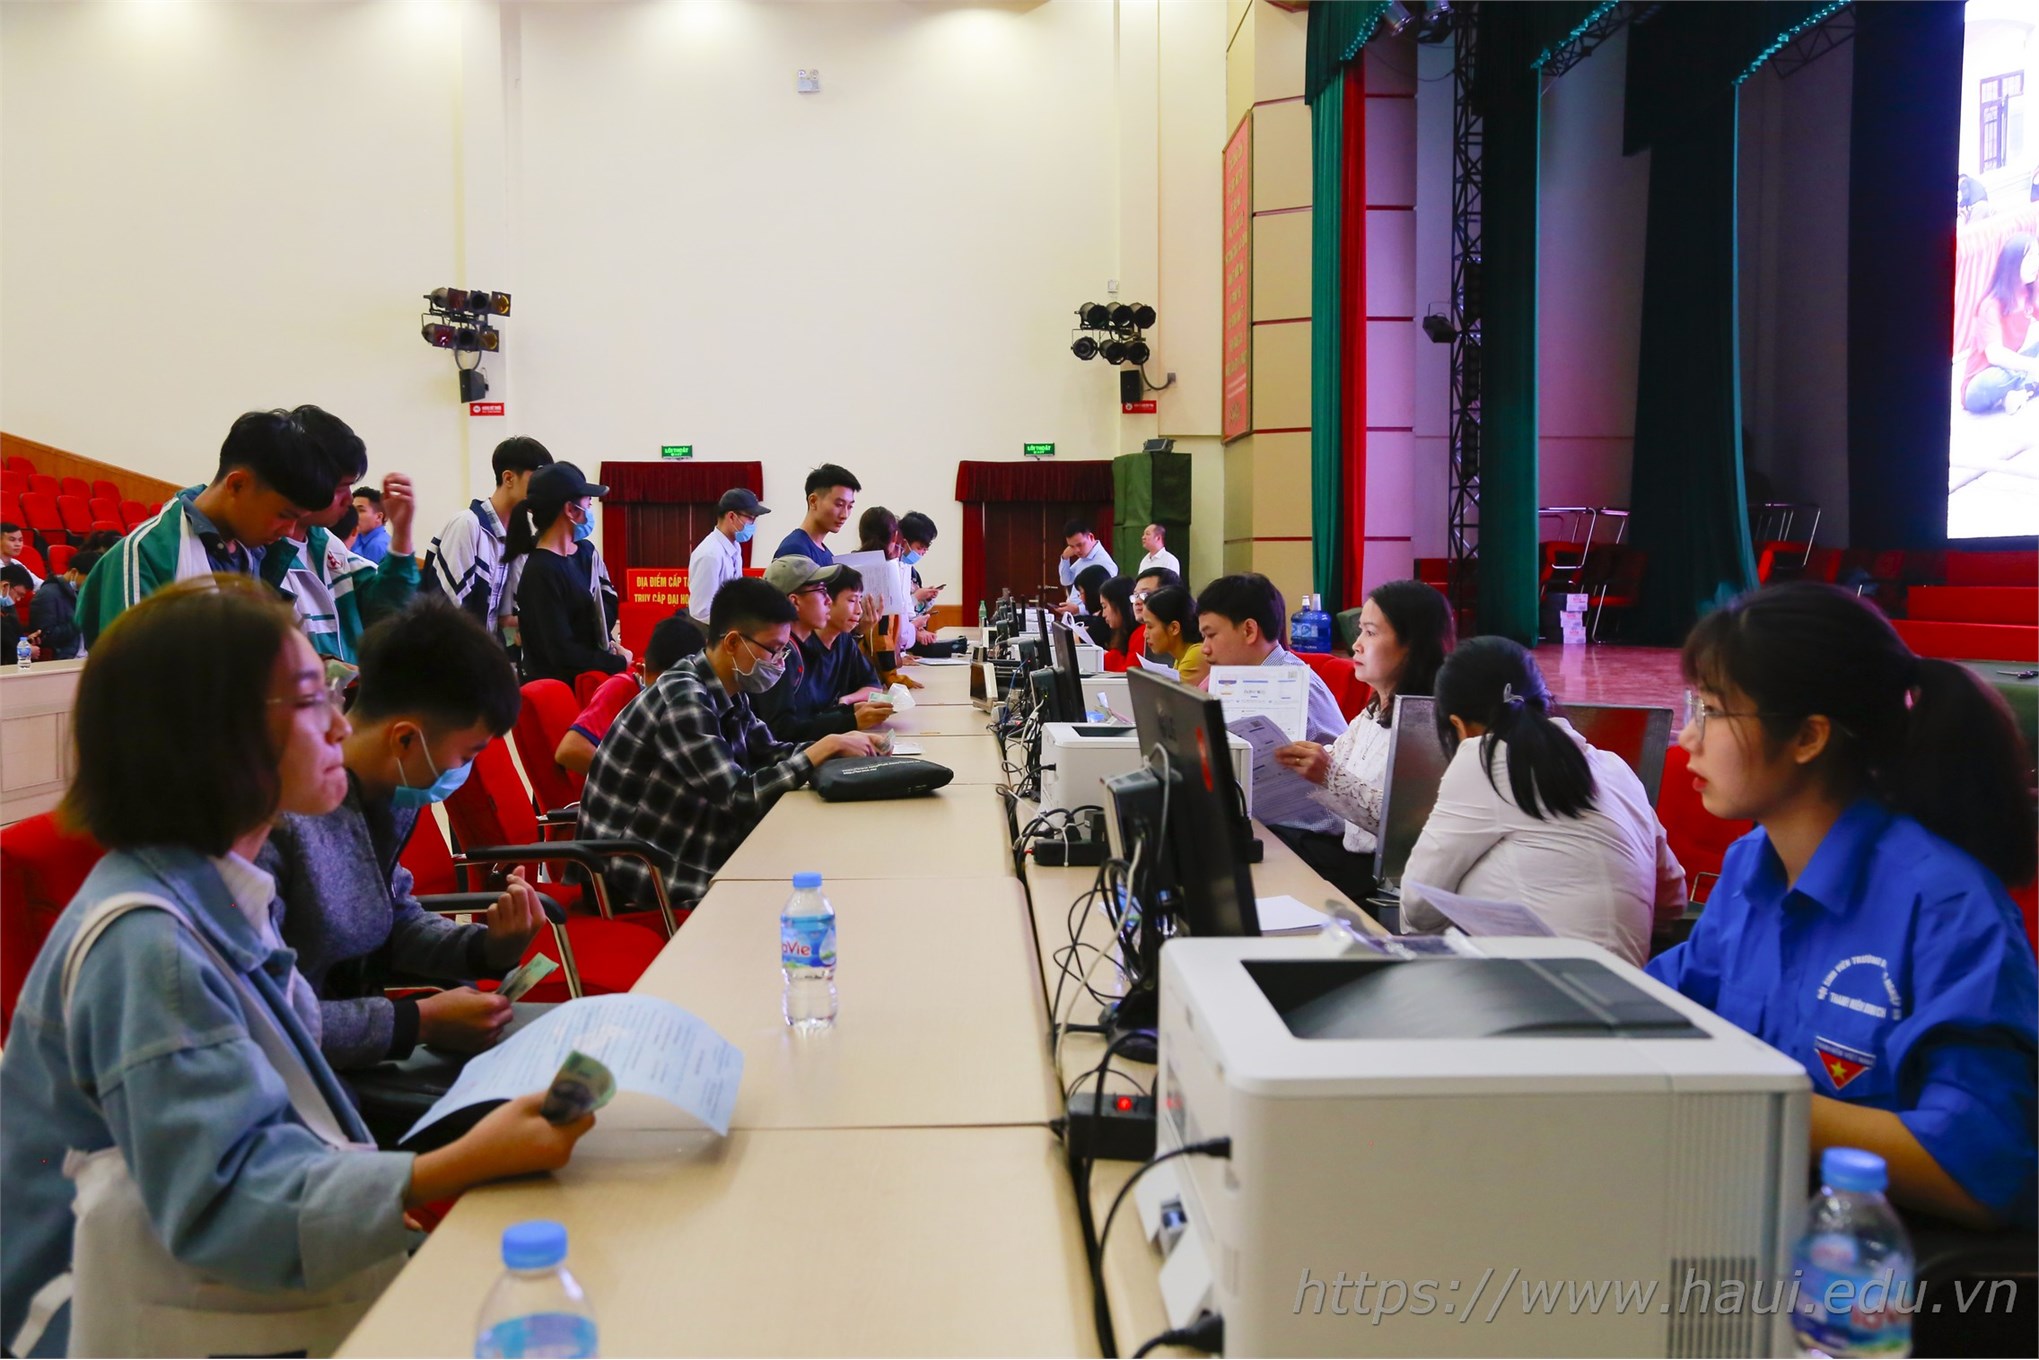 Hơn 7.000 tân sinh viên gia nhập ngôi nhà chung Đại học Công nghiệp Hà Nội